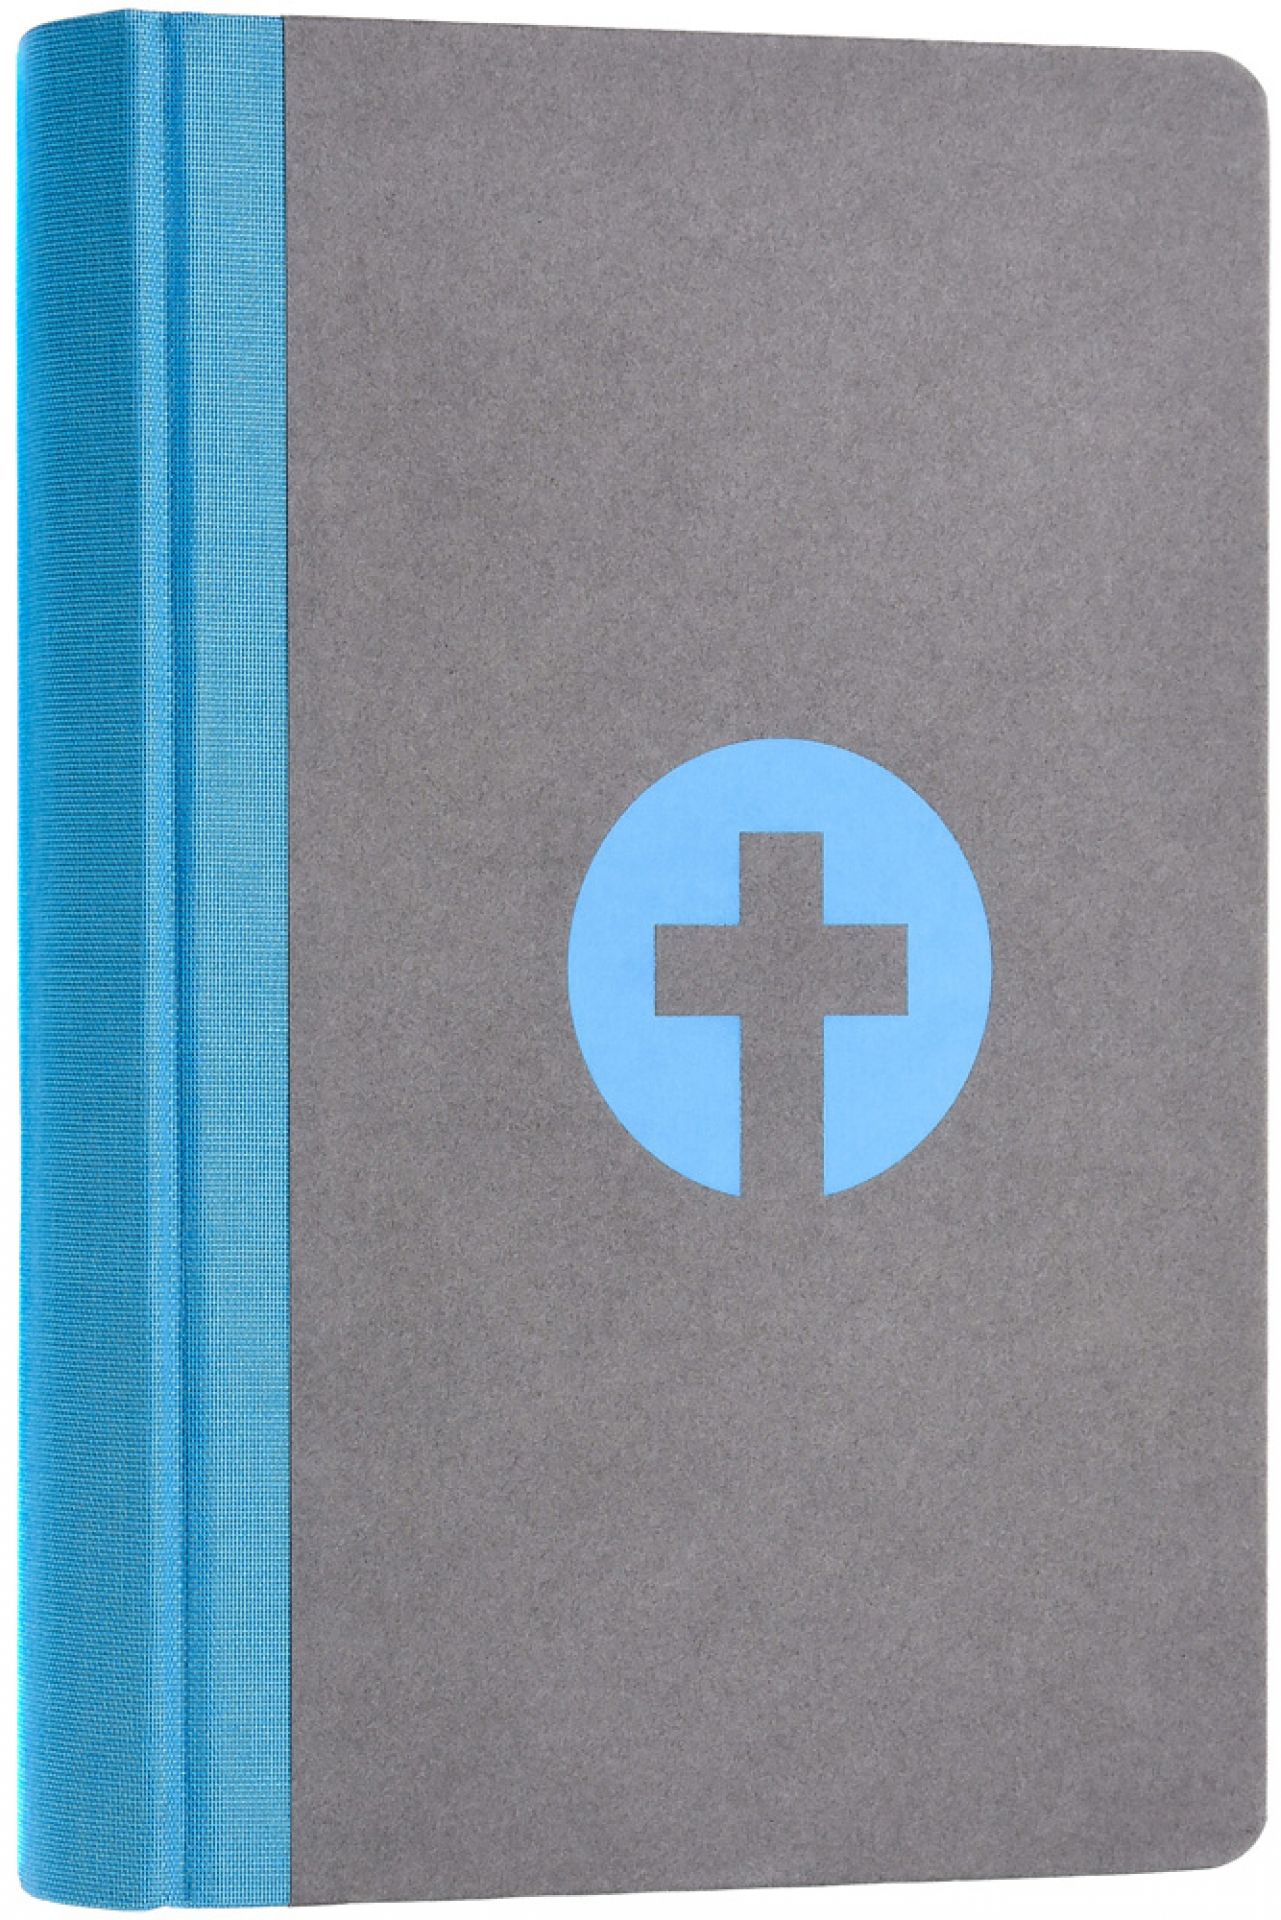 Bibel Schlachter 2000Taschenausgabe mit Parallelstellen, farbiger Einband hellblau/grau / Fadenheftung